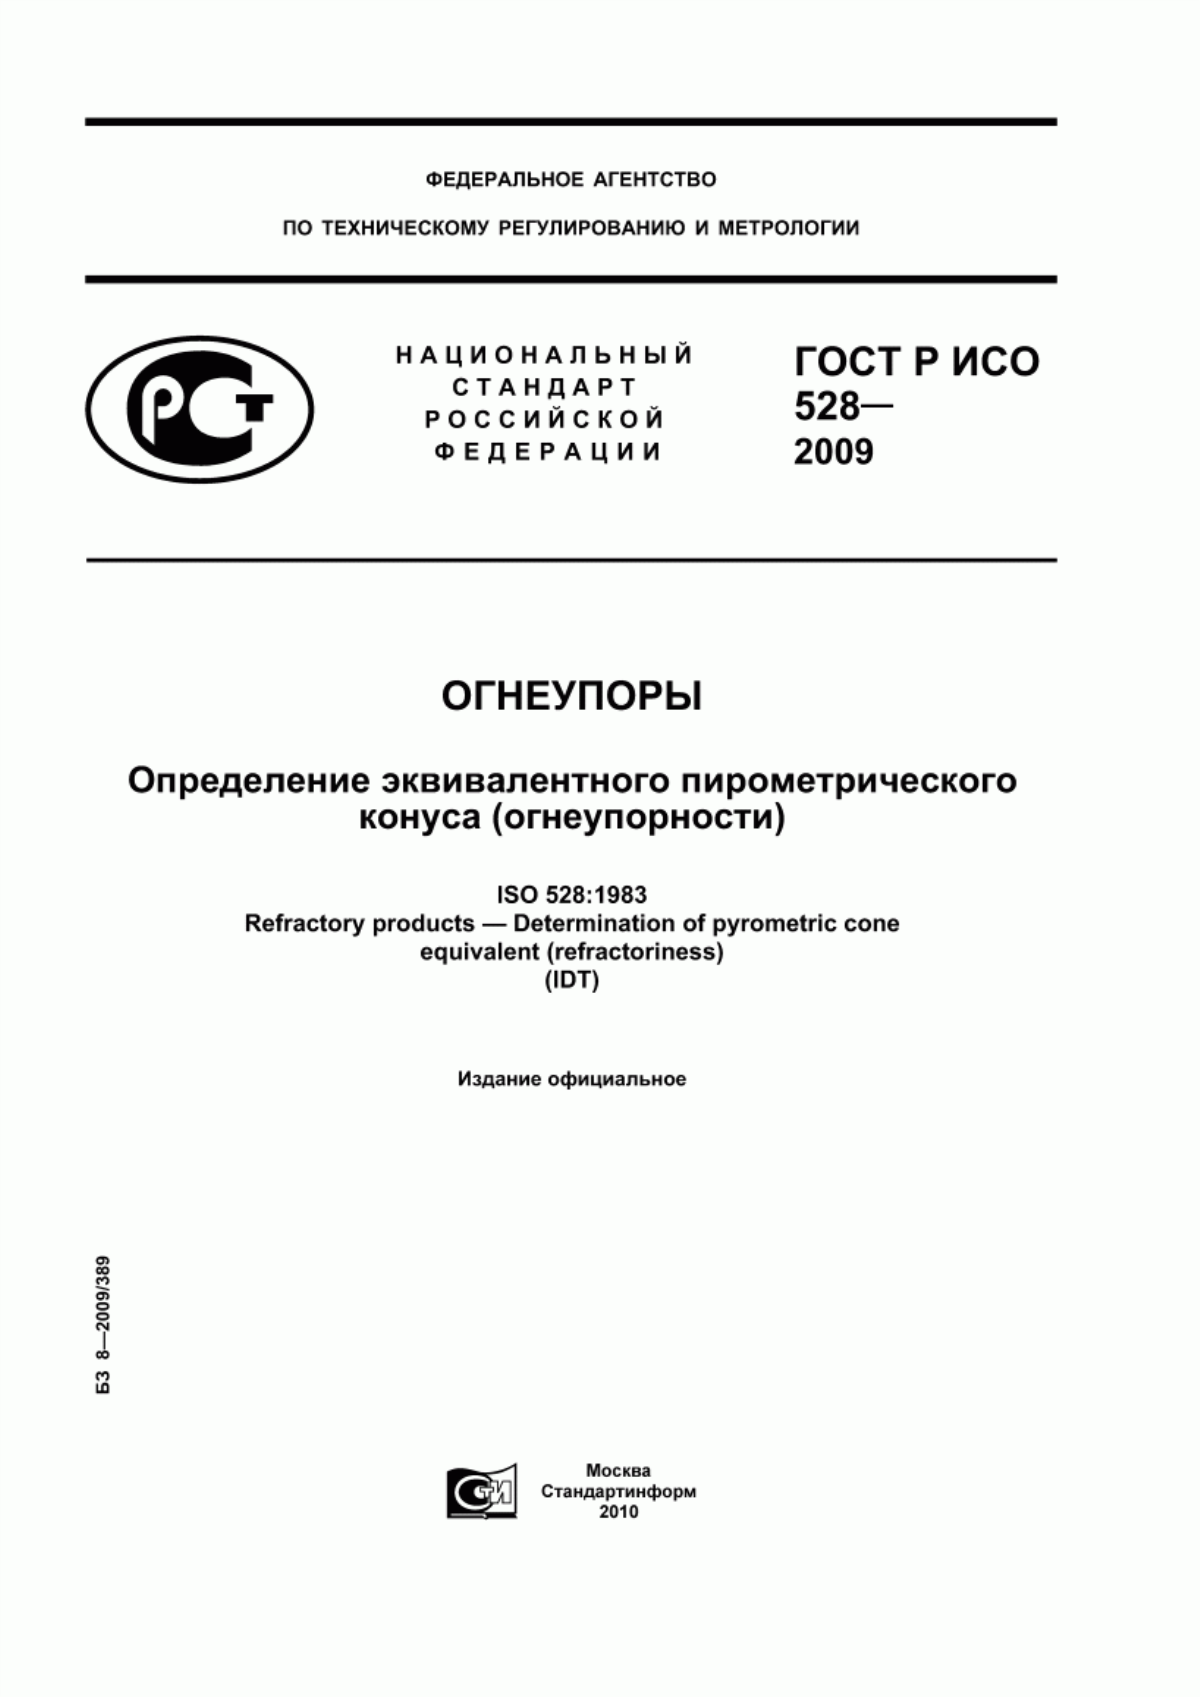 ГОСТ Р ИСО 528-2009 Огнеупоры. Определение эквивалентного пирометрического конуса (огнеупорности)